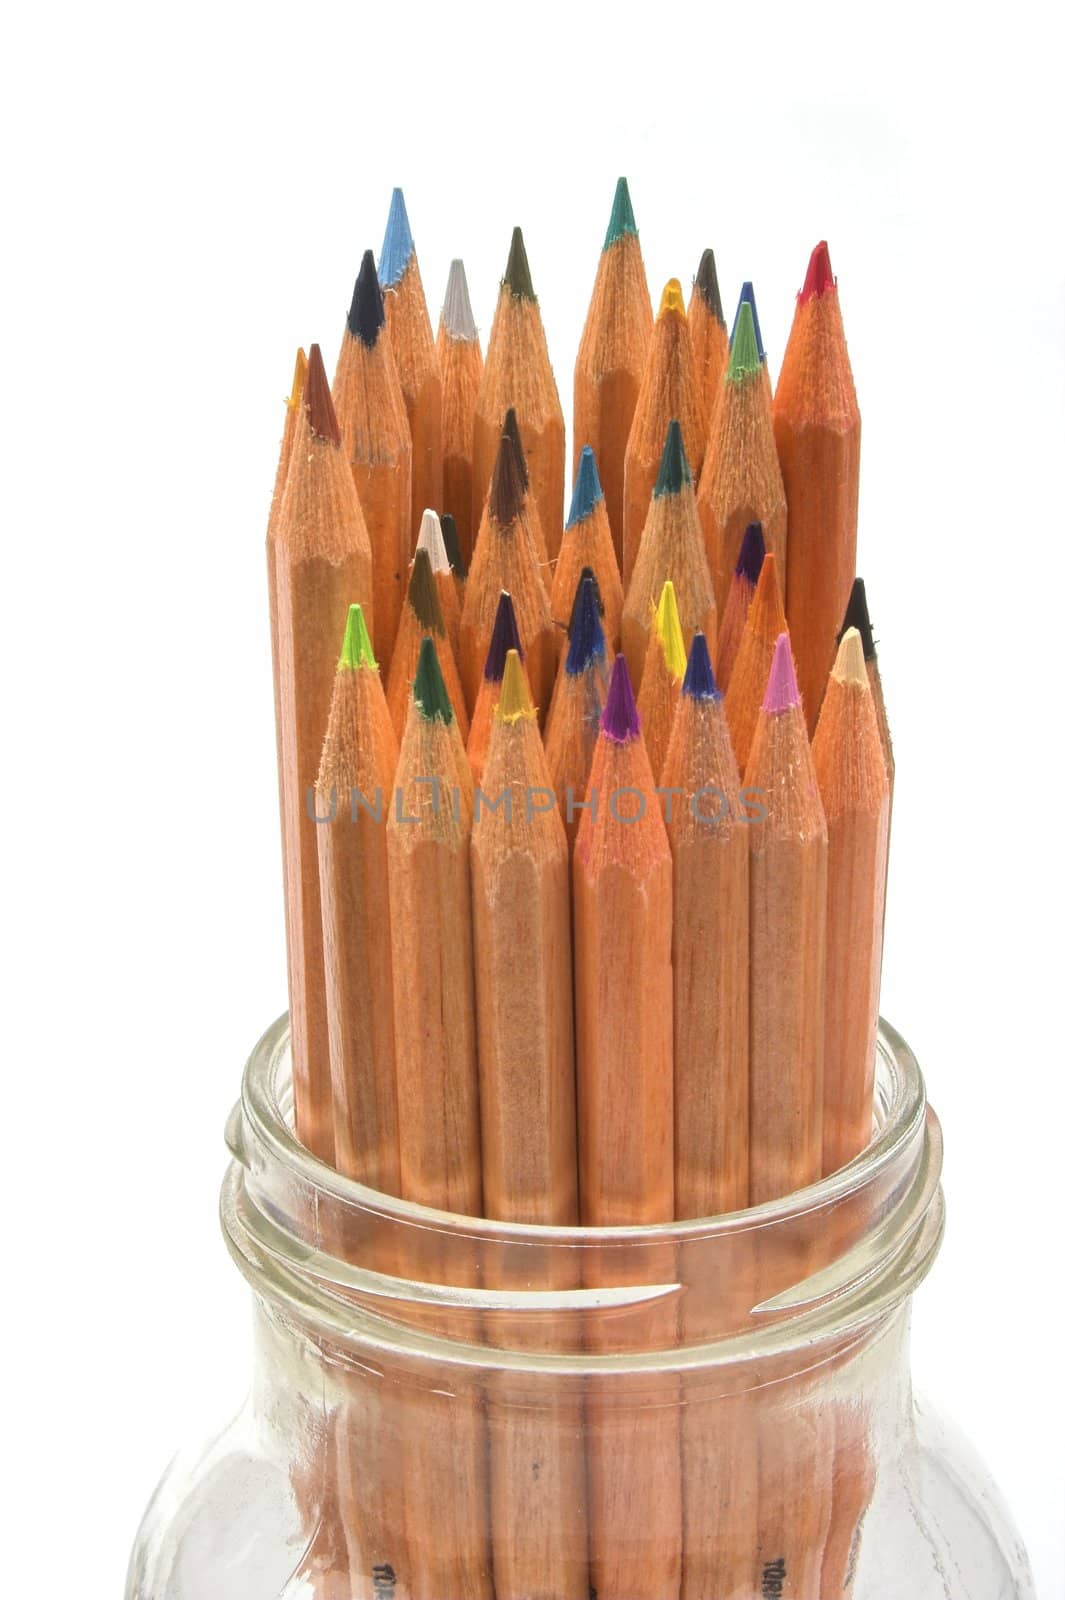 color pensils in the jar by alexkosev